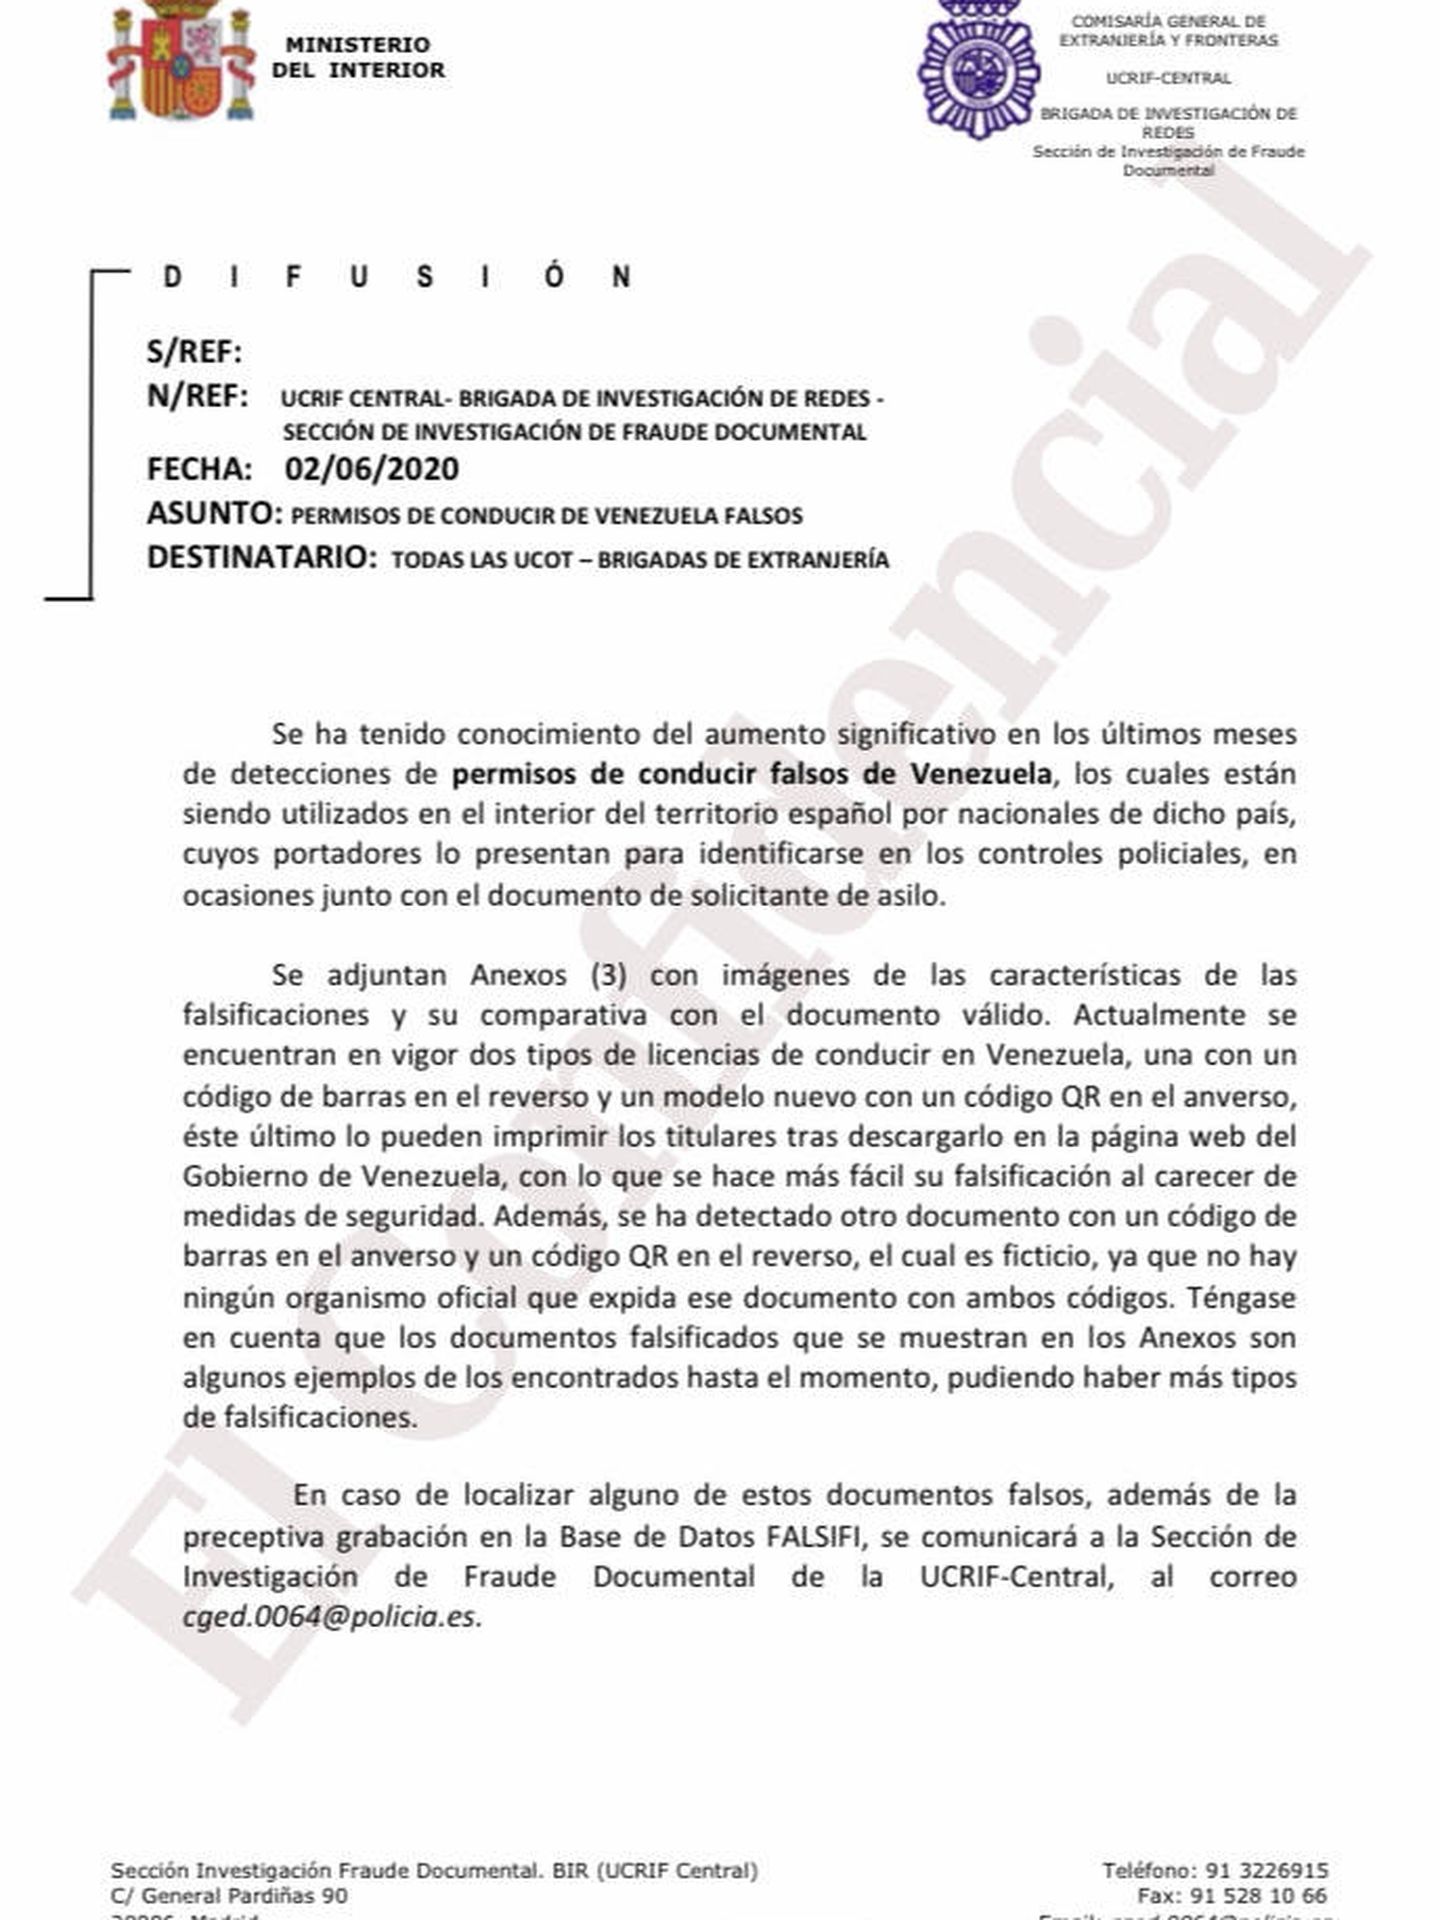 Orden policial emitida a las brigadas de Extranjería alertando sobre el creciente fraude de los carnets venezolanos. (EC)